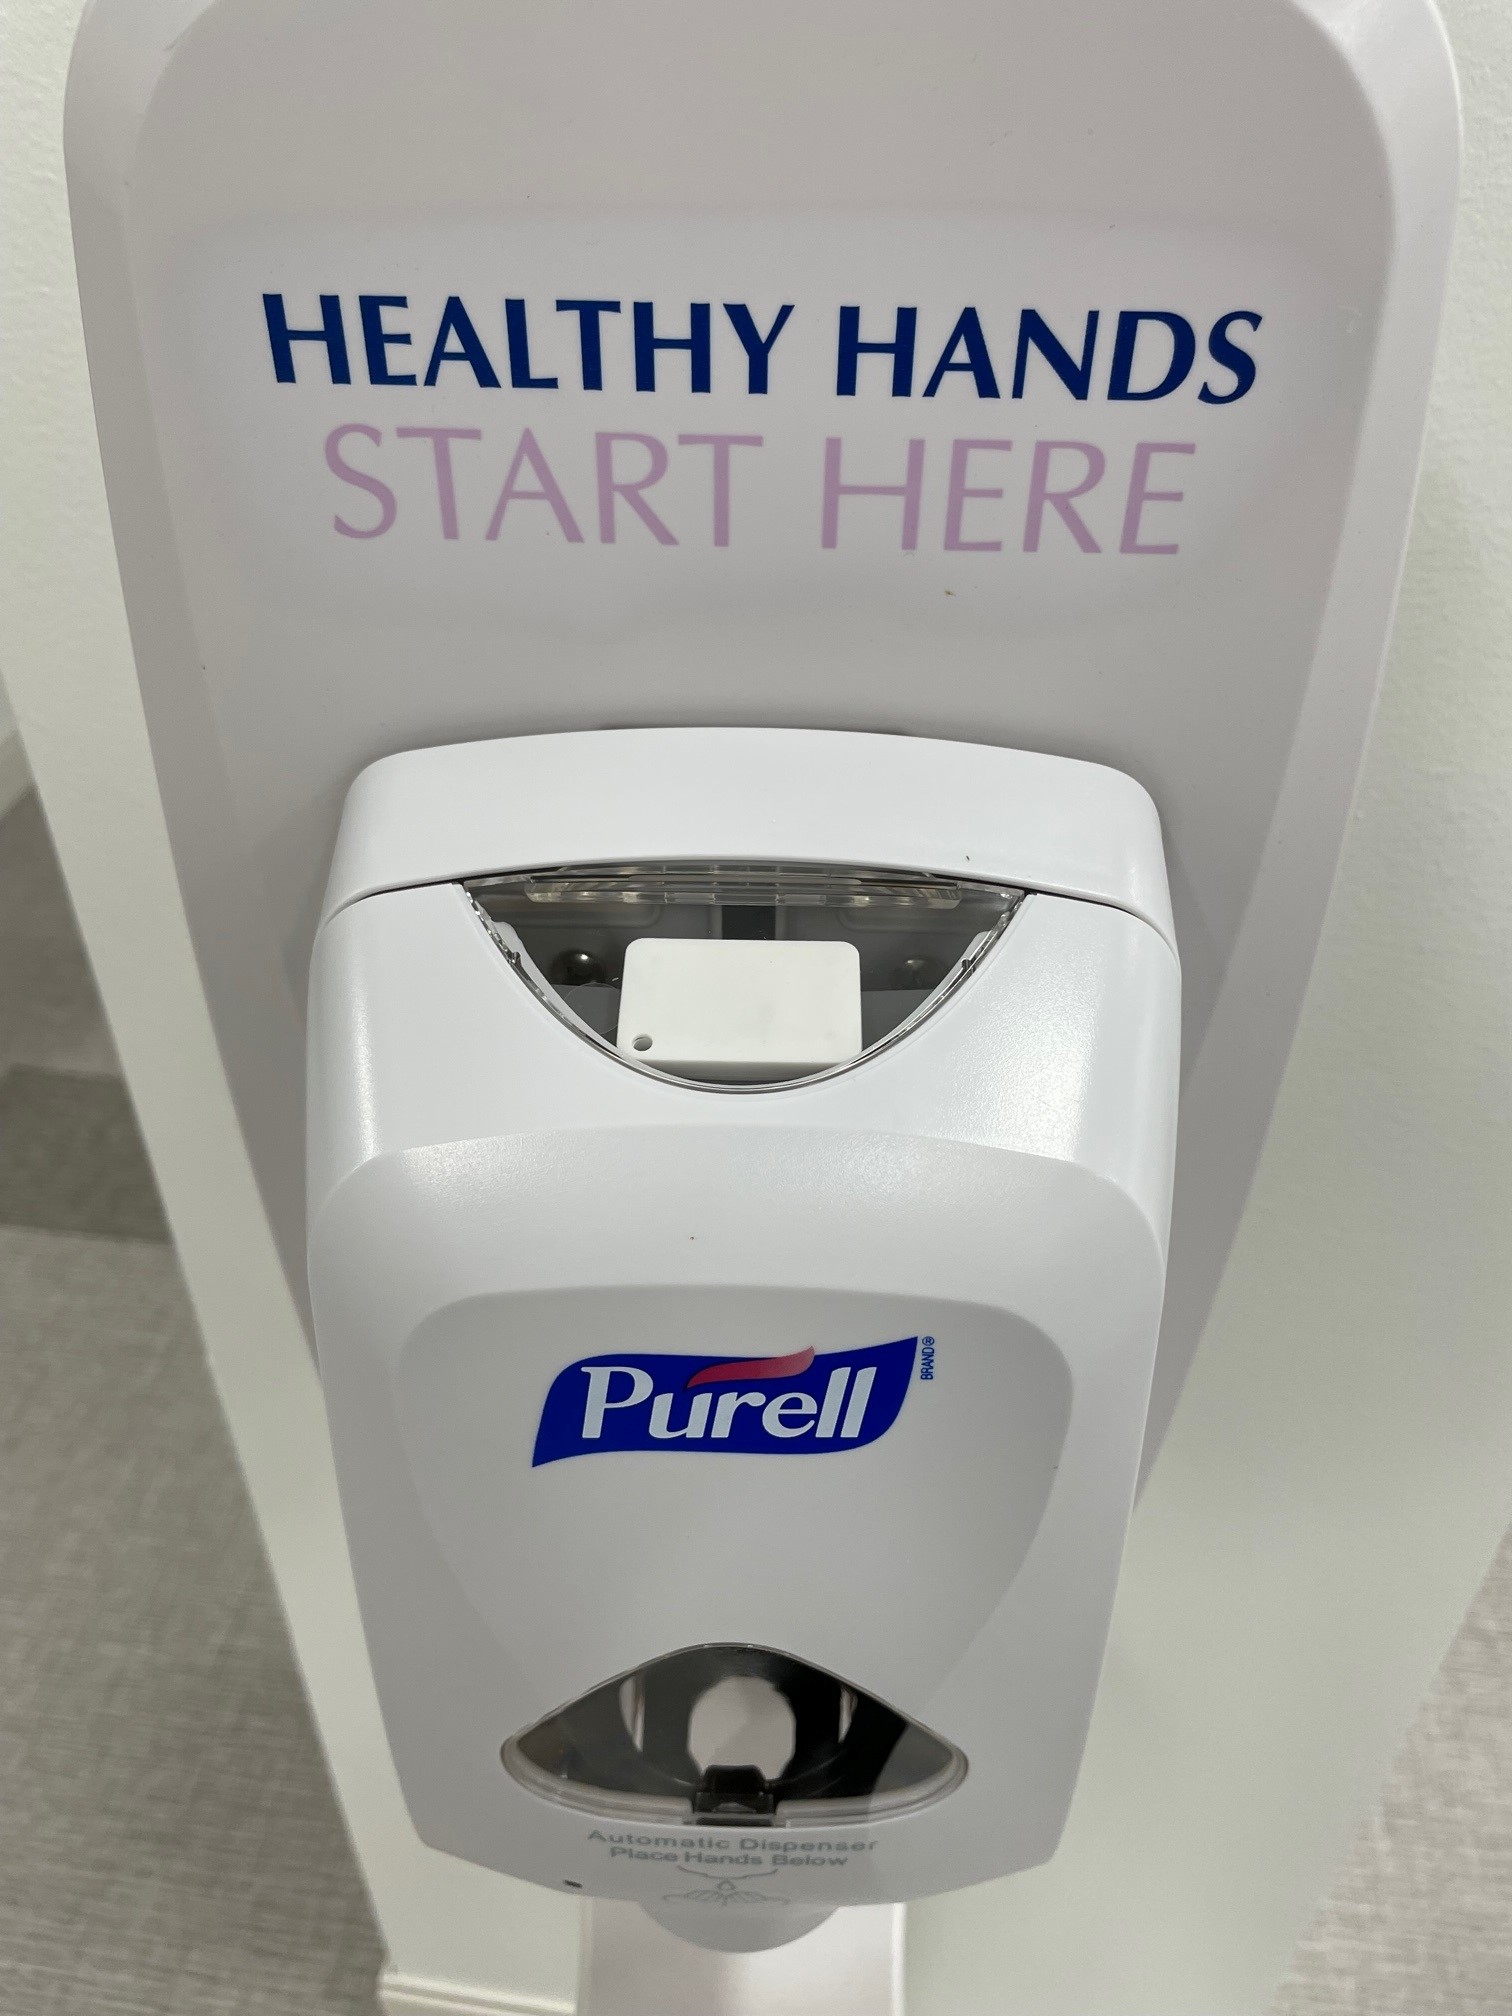 AiRISTA A7 tag in hand hygiene dispenser